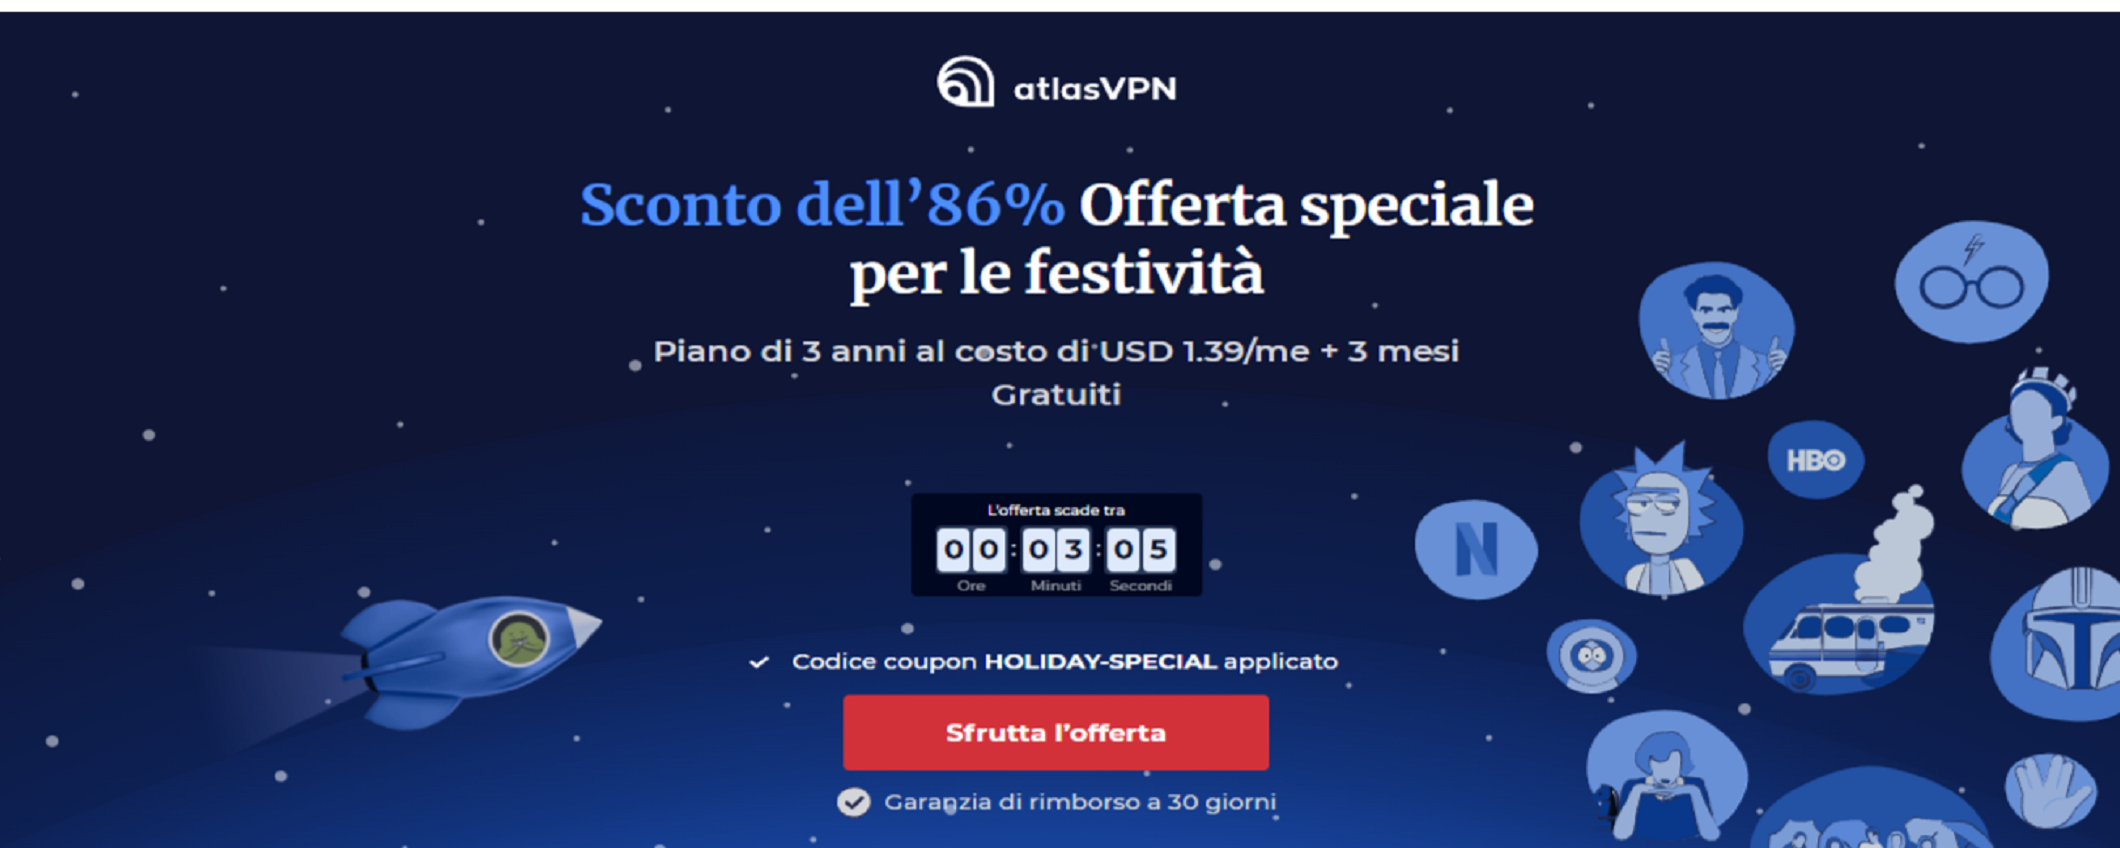 Atlas VPN: sconto dell’86% per le festività!